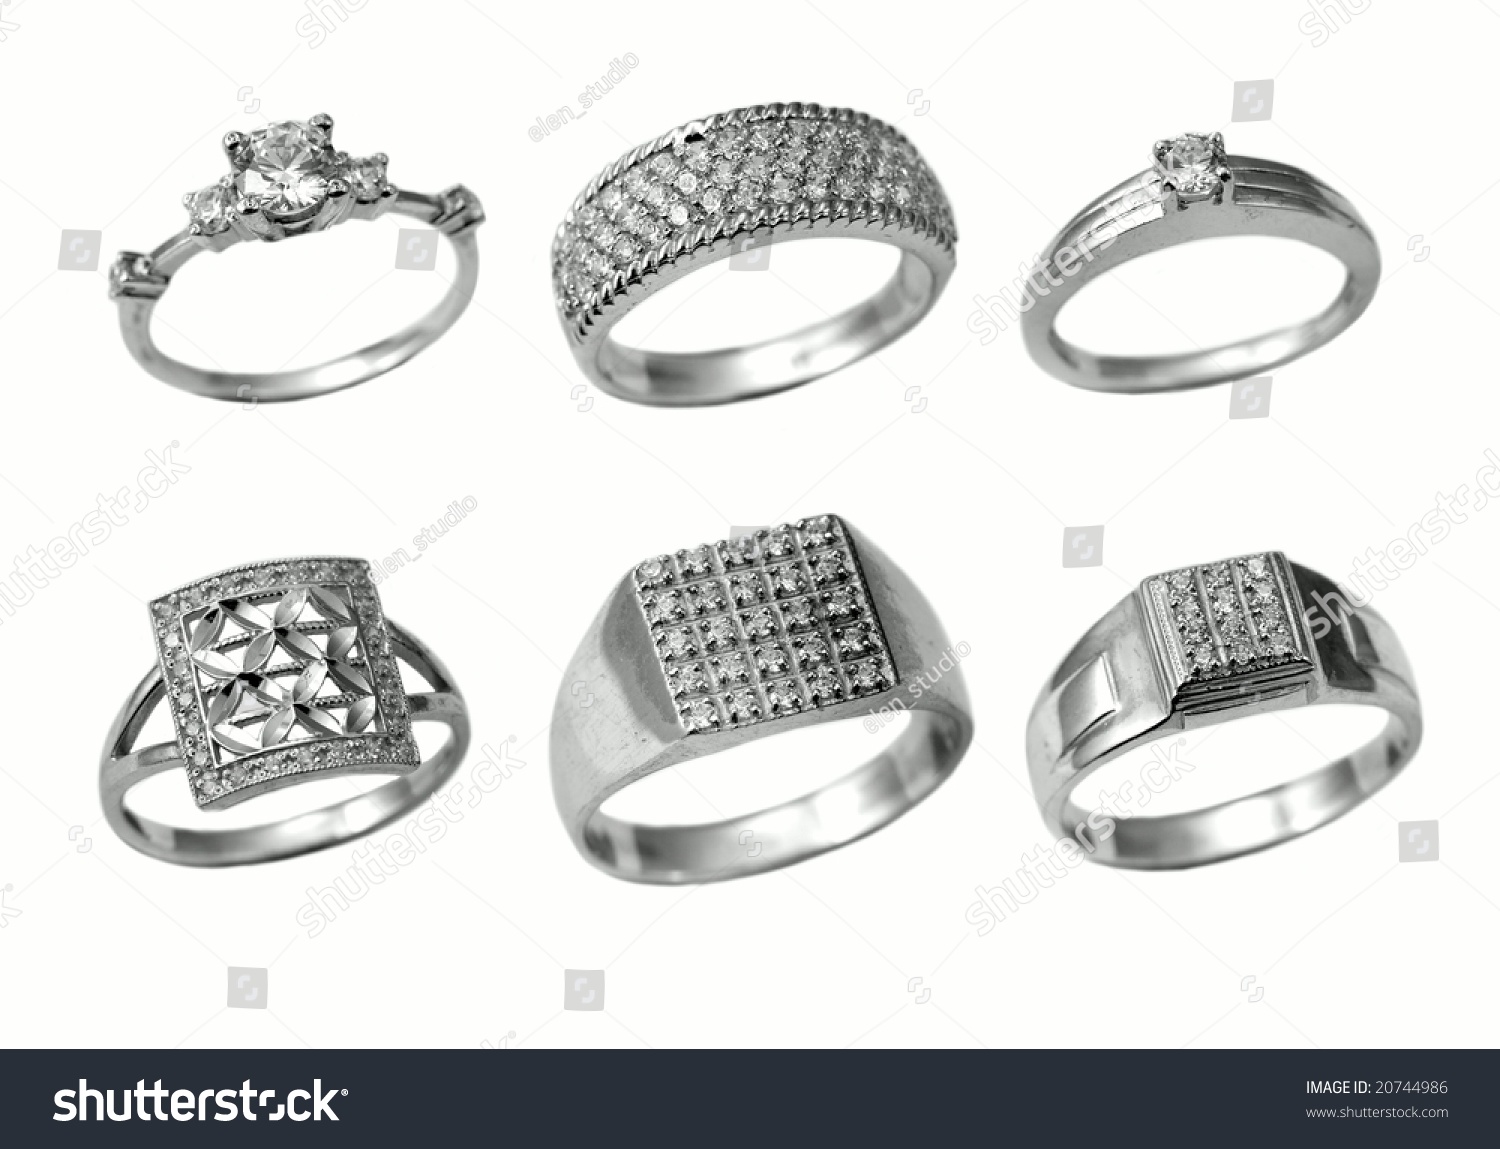 Beautiful jewelry rings #20744986